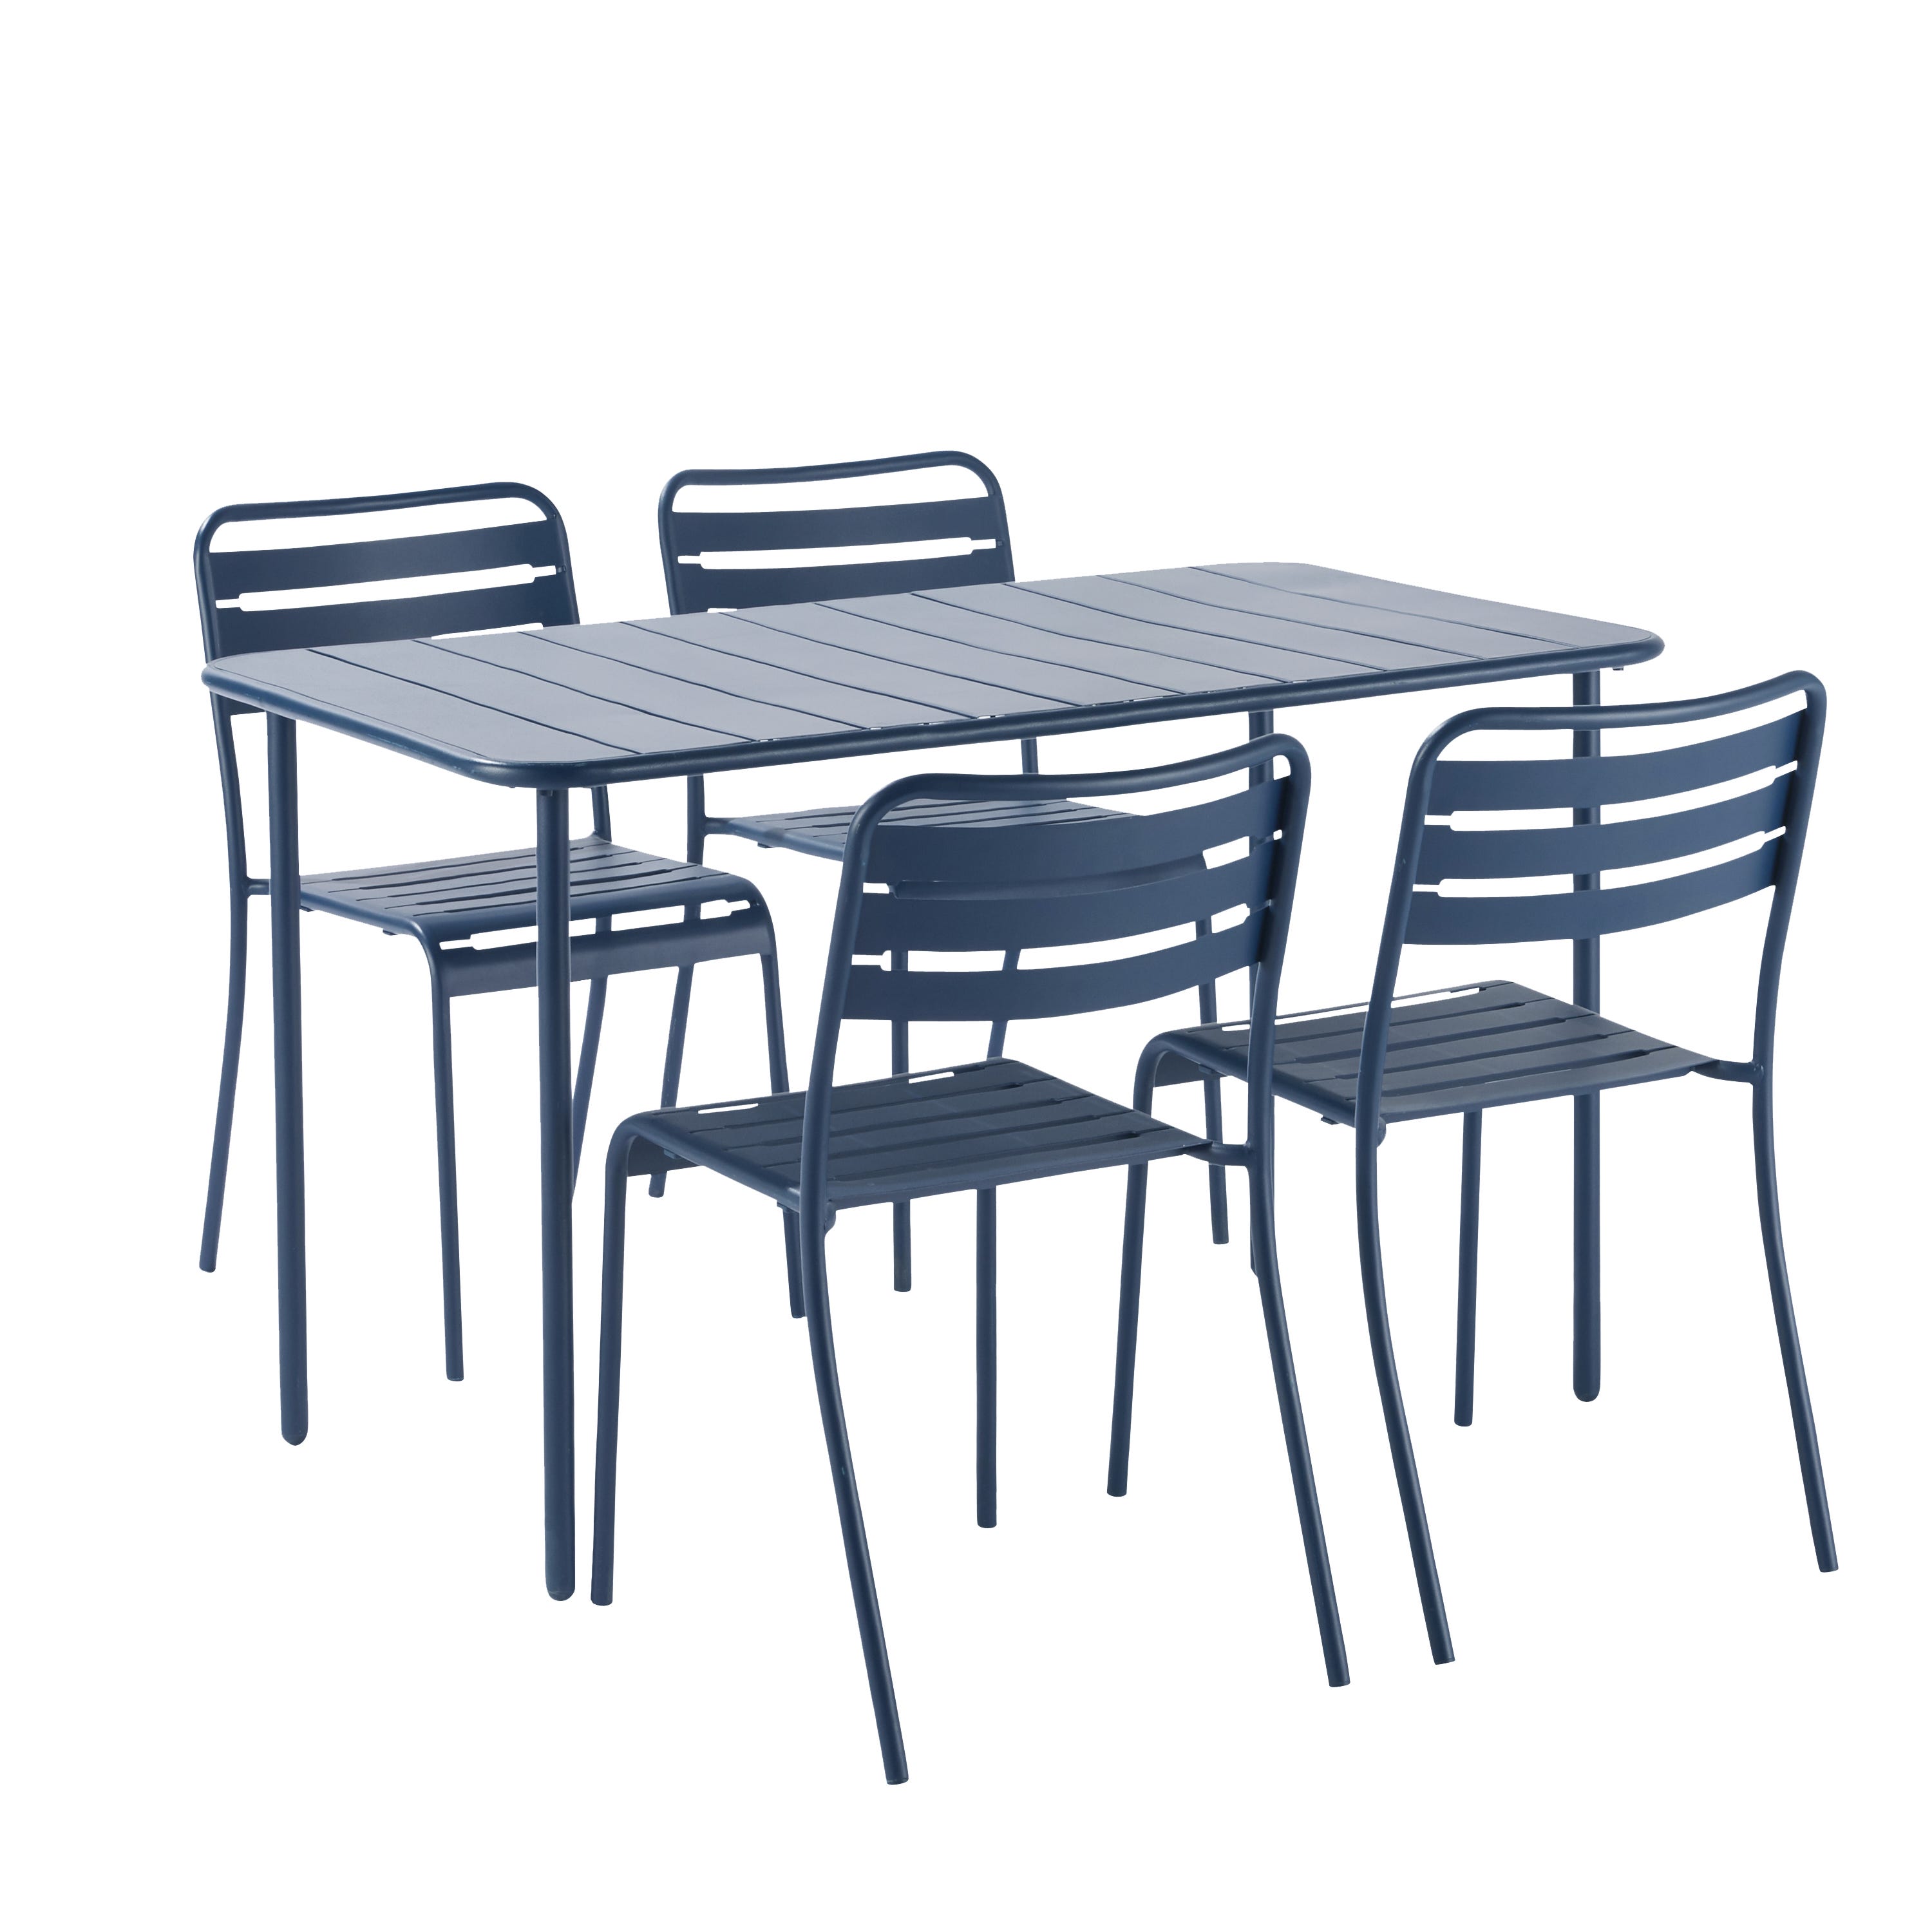 HOUSSE POUR TABLE RECTANGULAIRE - 200 X 100 X H 80 cm DISPONIBLE